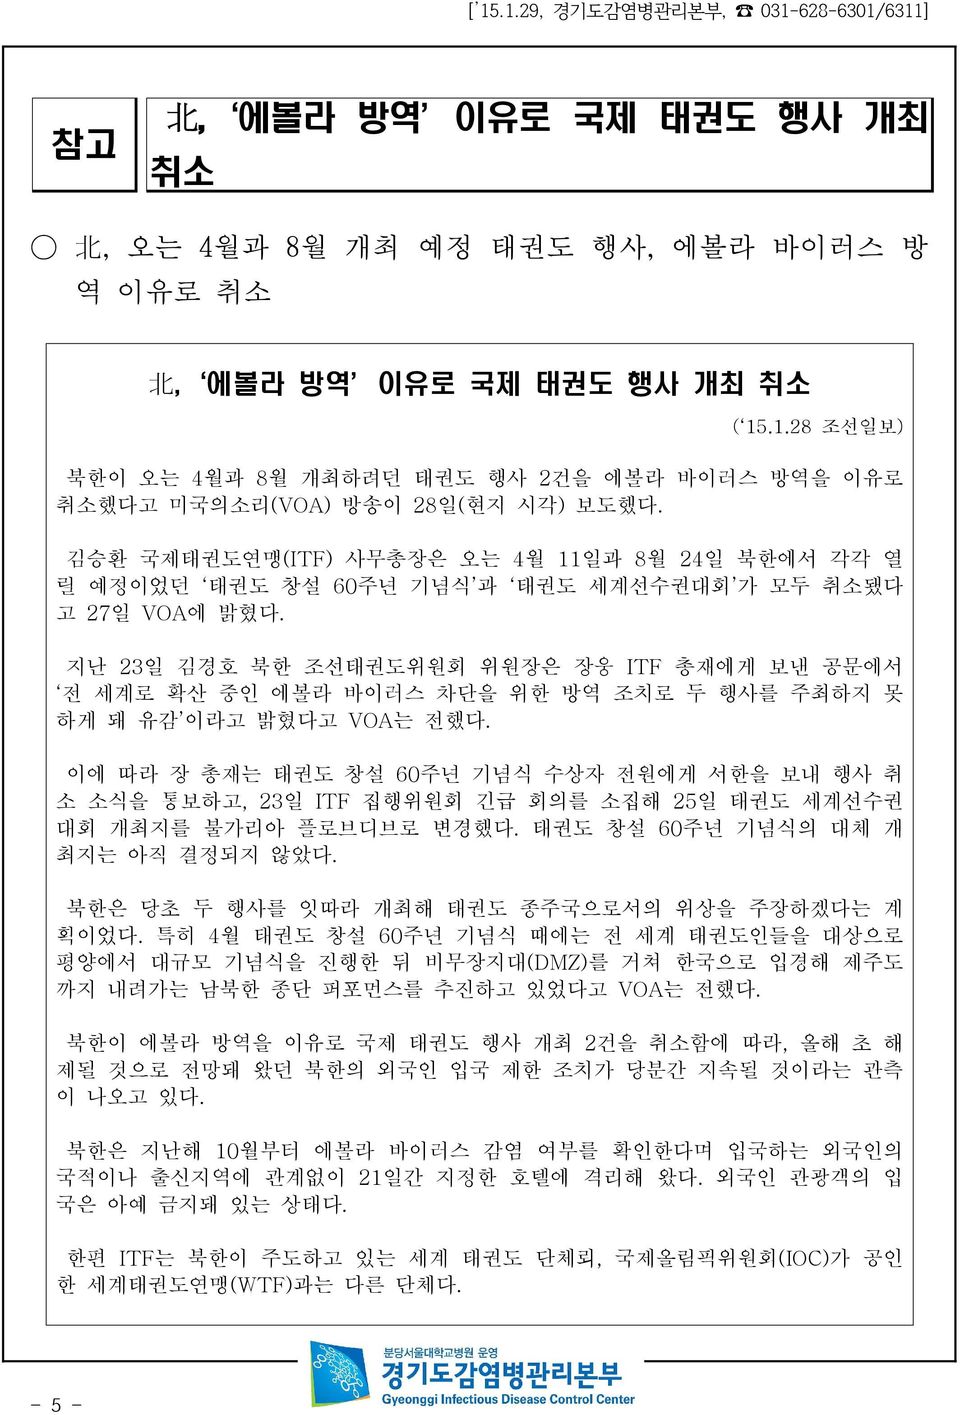 김승환 국제태권도연맹(ITF) 사무총장은 오는 4월 11일과 8월 24일 북한에서 각각 열 릴 예정이었던 태권도 창설 60주년 기념식 과 태권도 세계선수권대회 가 모두 취소됐다 고 27일 VOA에 밝혔다.